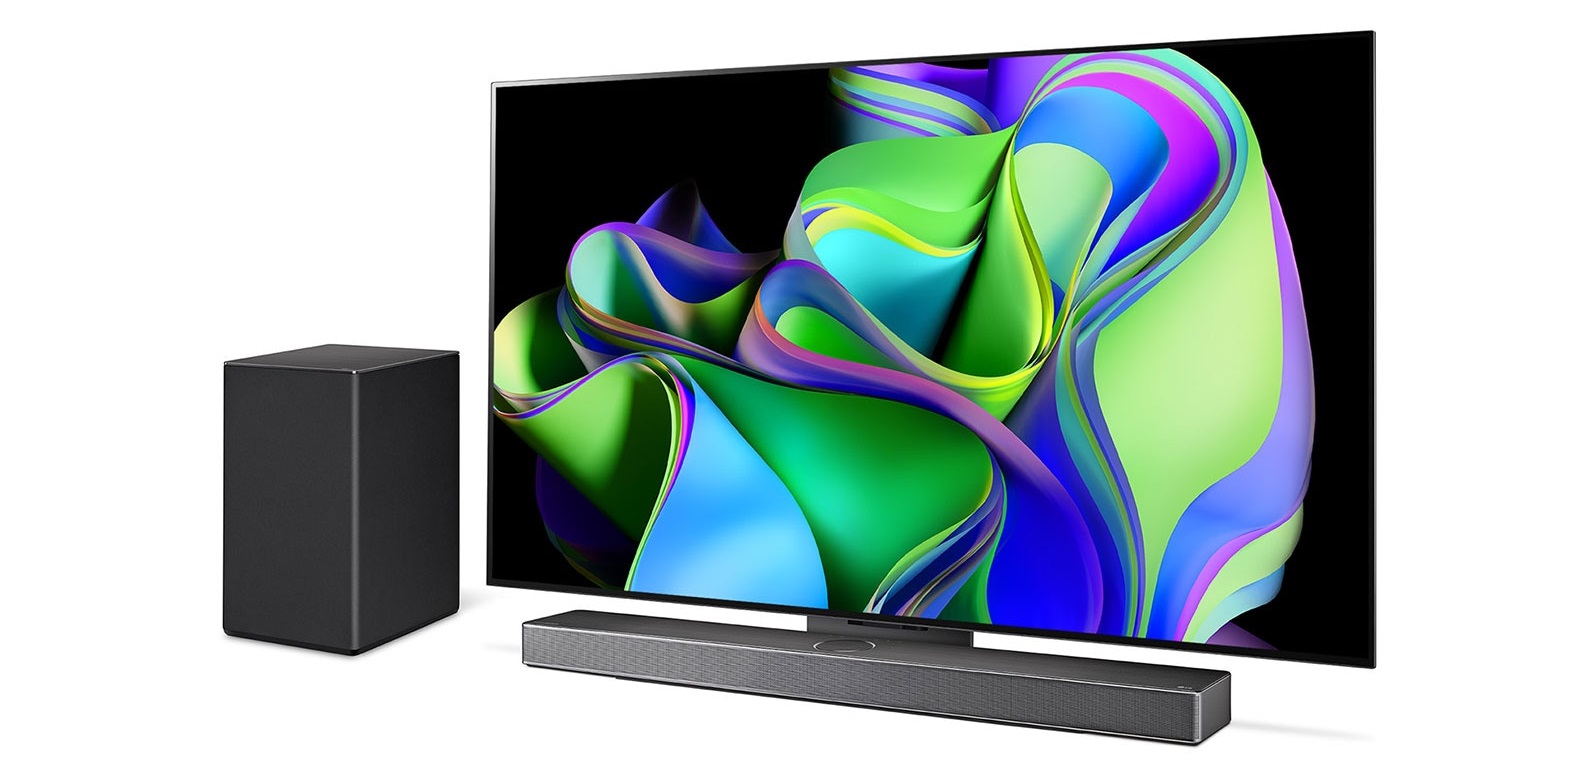 LG wprowadza na rynek soundbar SC9S 400W z certyfikatem IMAX Enhanced za 1000 dolarów